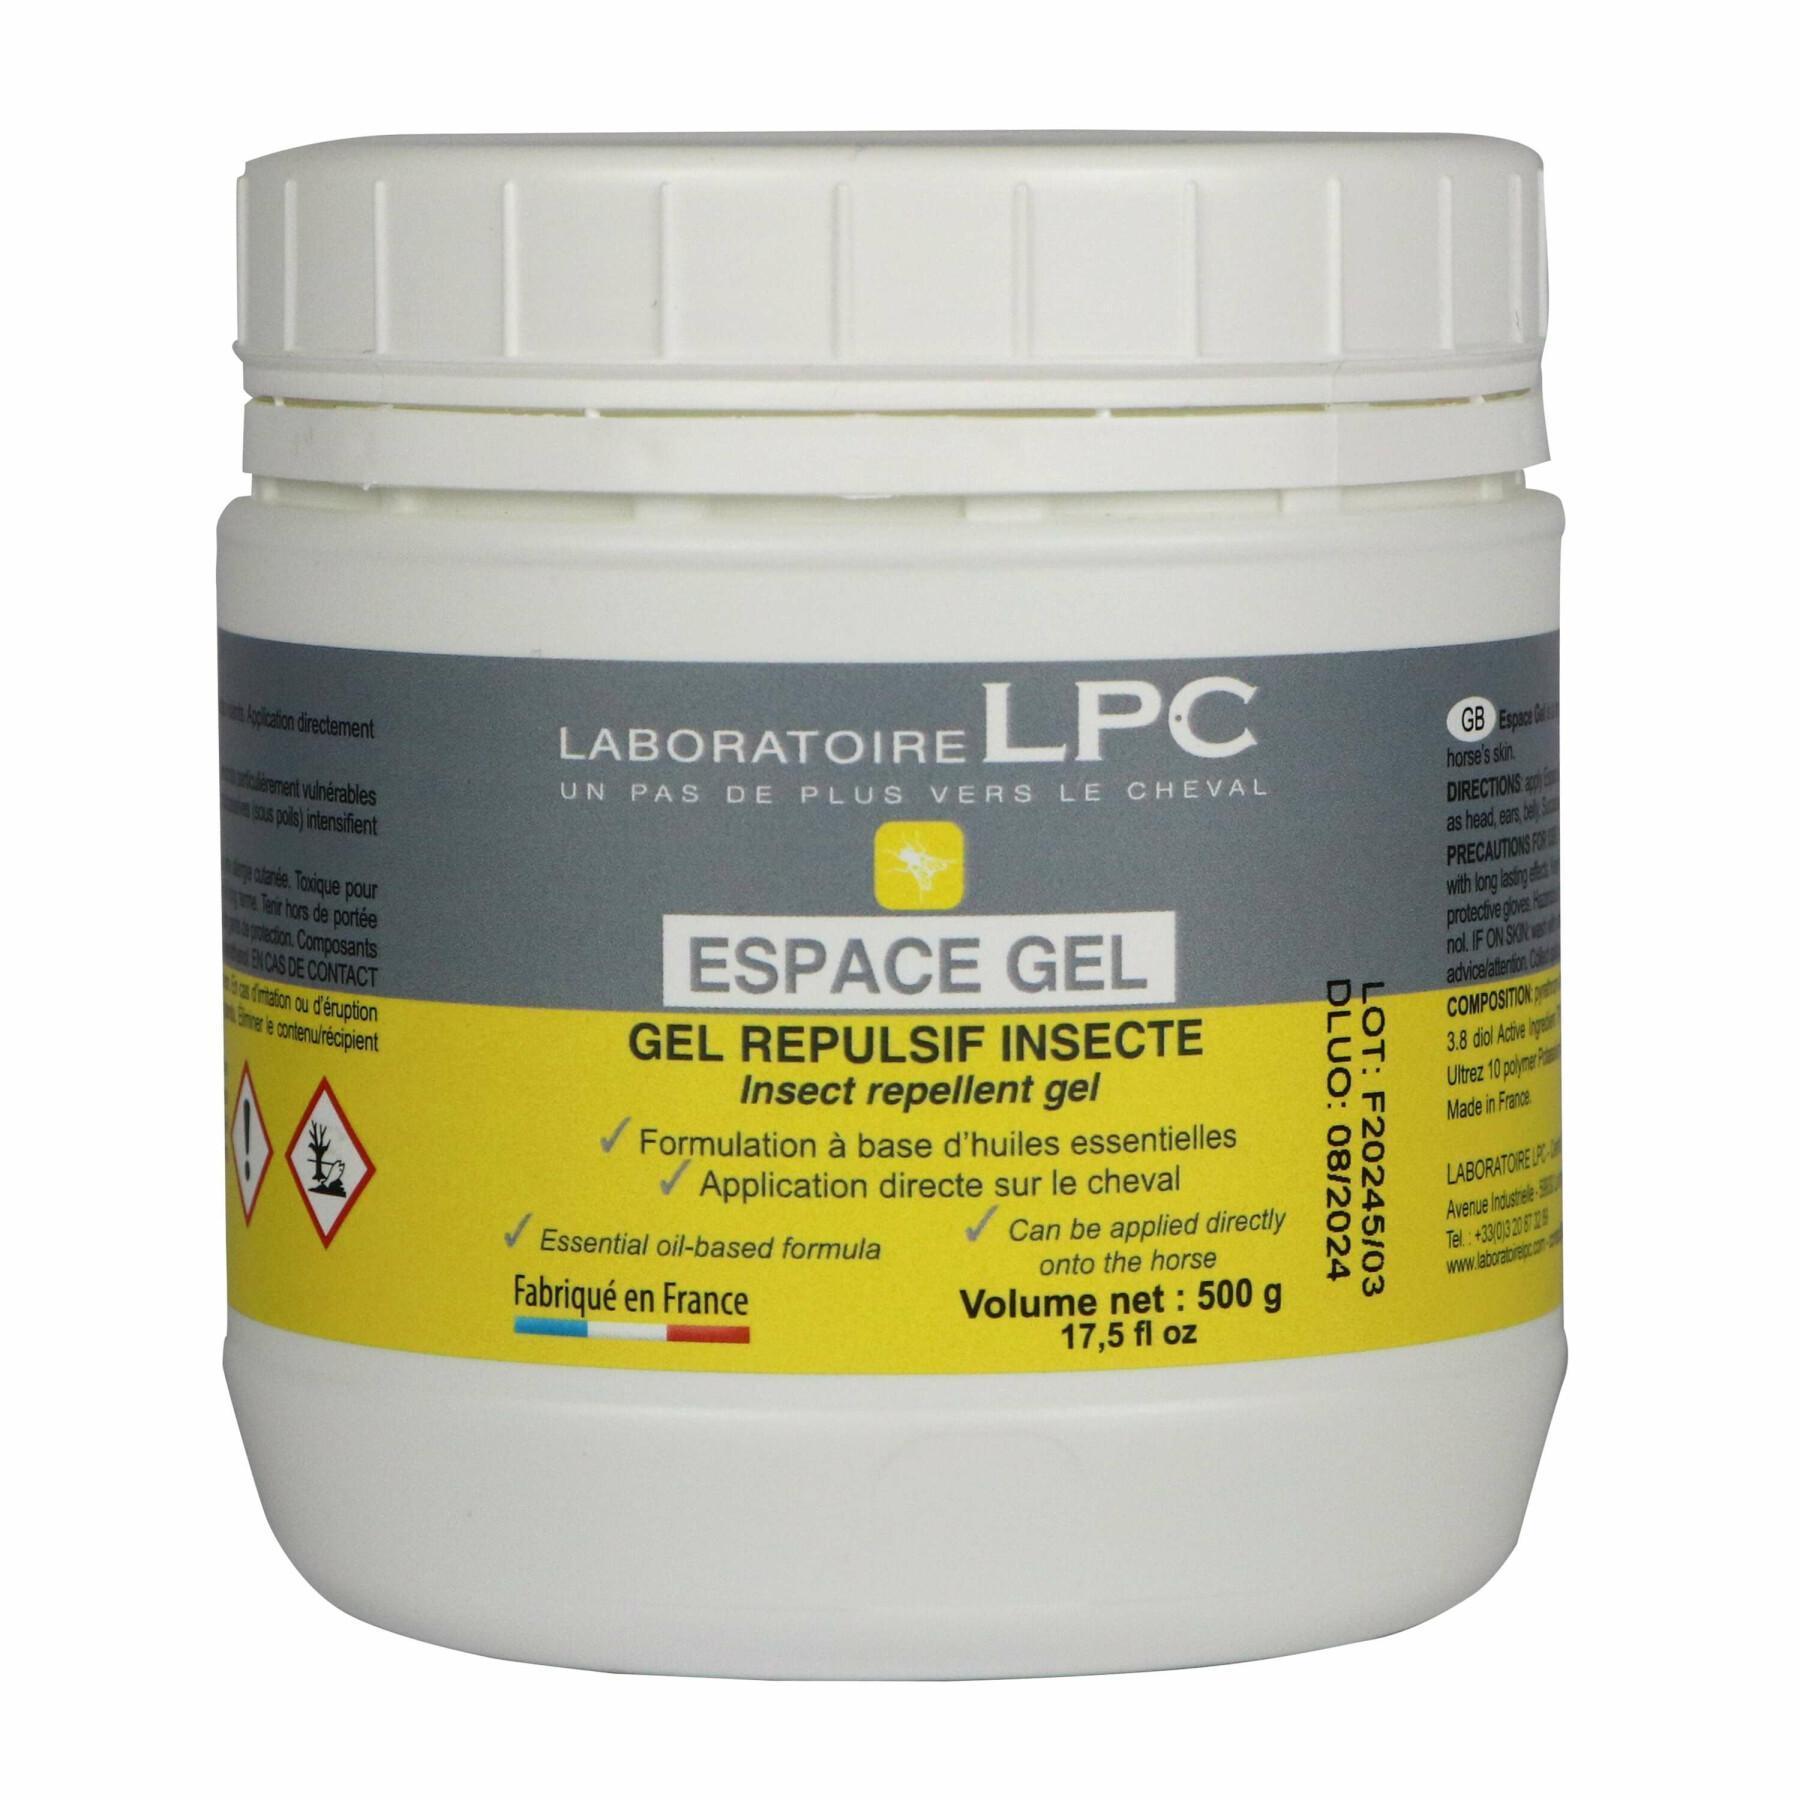 Insect repellent gel LPC Espace Gel